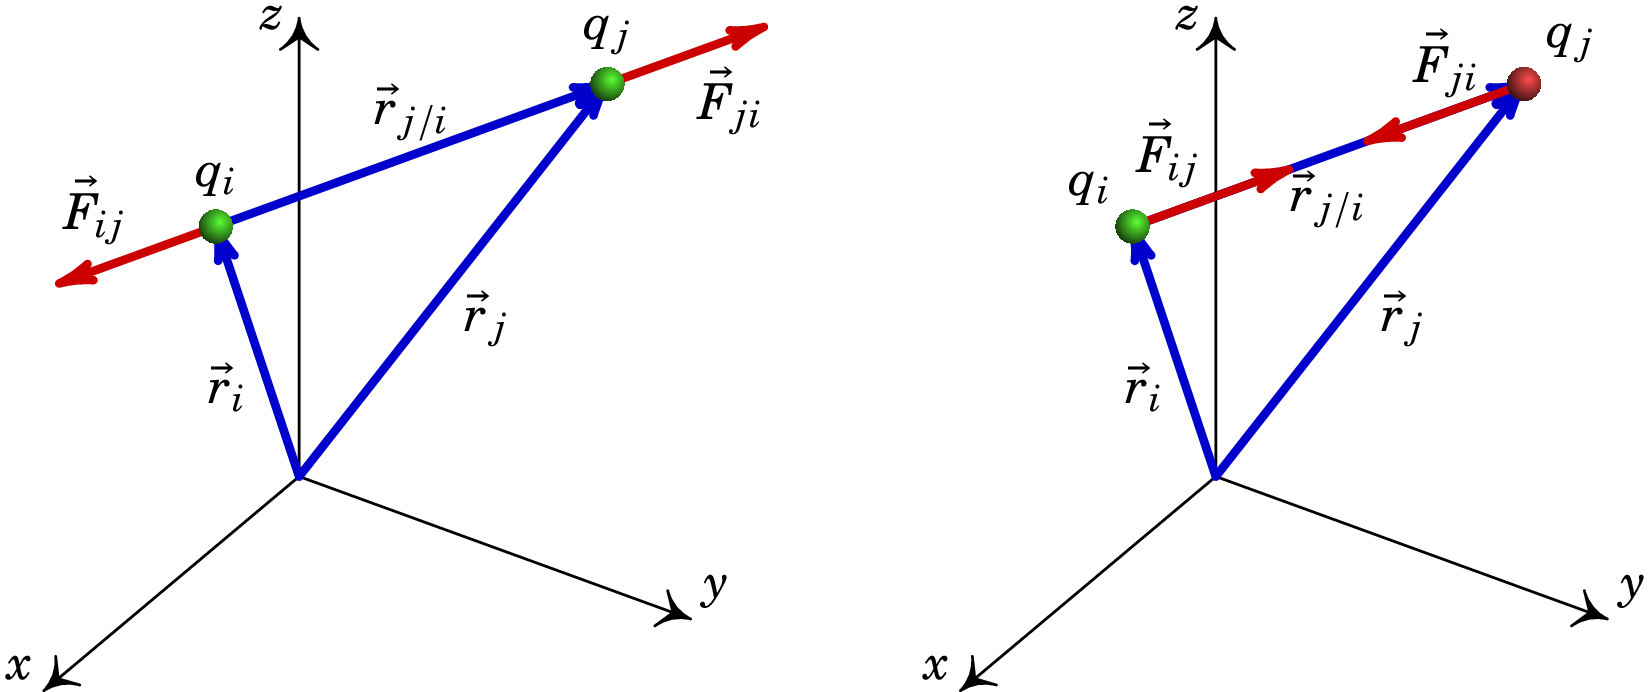 Força entre cargas pontuais do mesmo sinal (esquerda)
e de sinais opostos (direita).